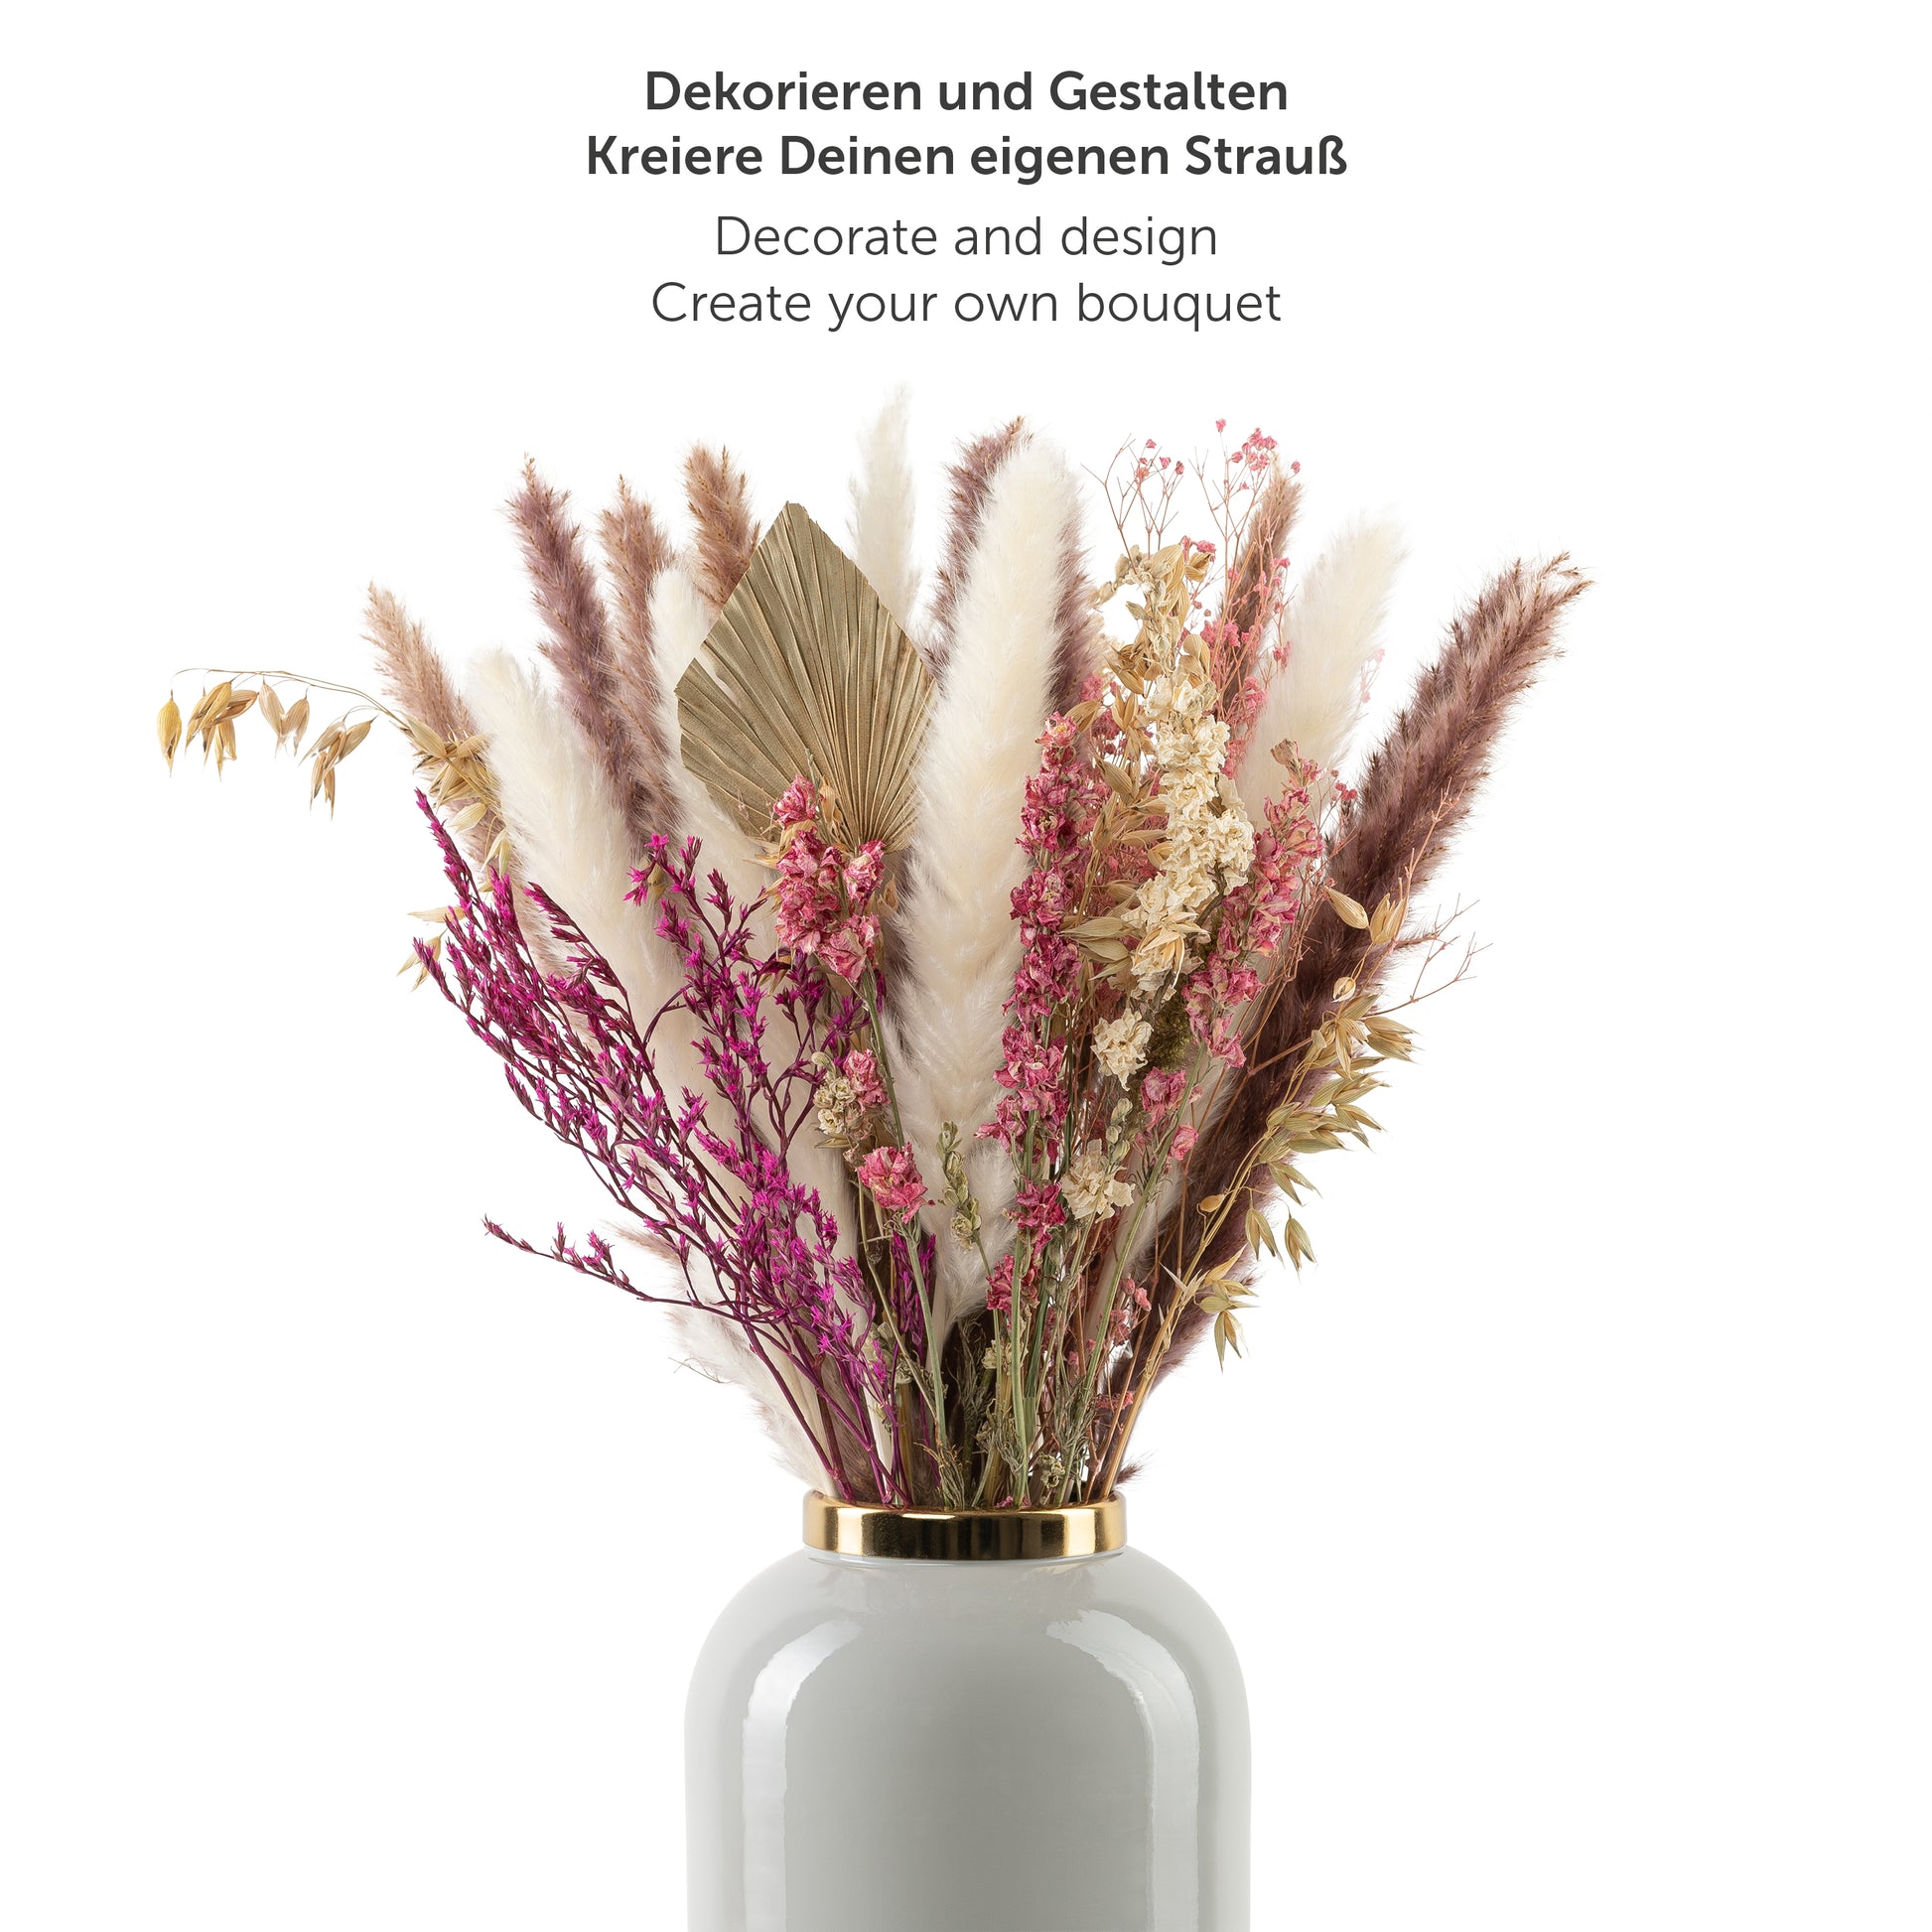 Ein dekoratives Arrangement aus verschiedenen Trockenblumen und Pampasgras in einer weißen Vase mit der Aufschrift 'Dekorieren und Gestalten Kreiere Deinen eigenen Strauß'.